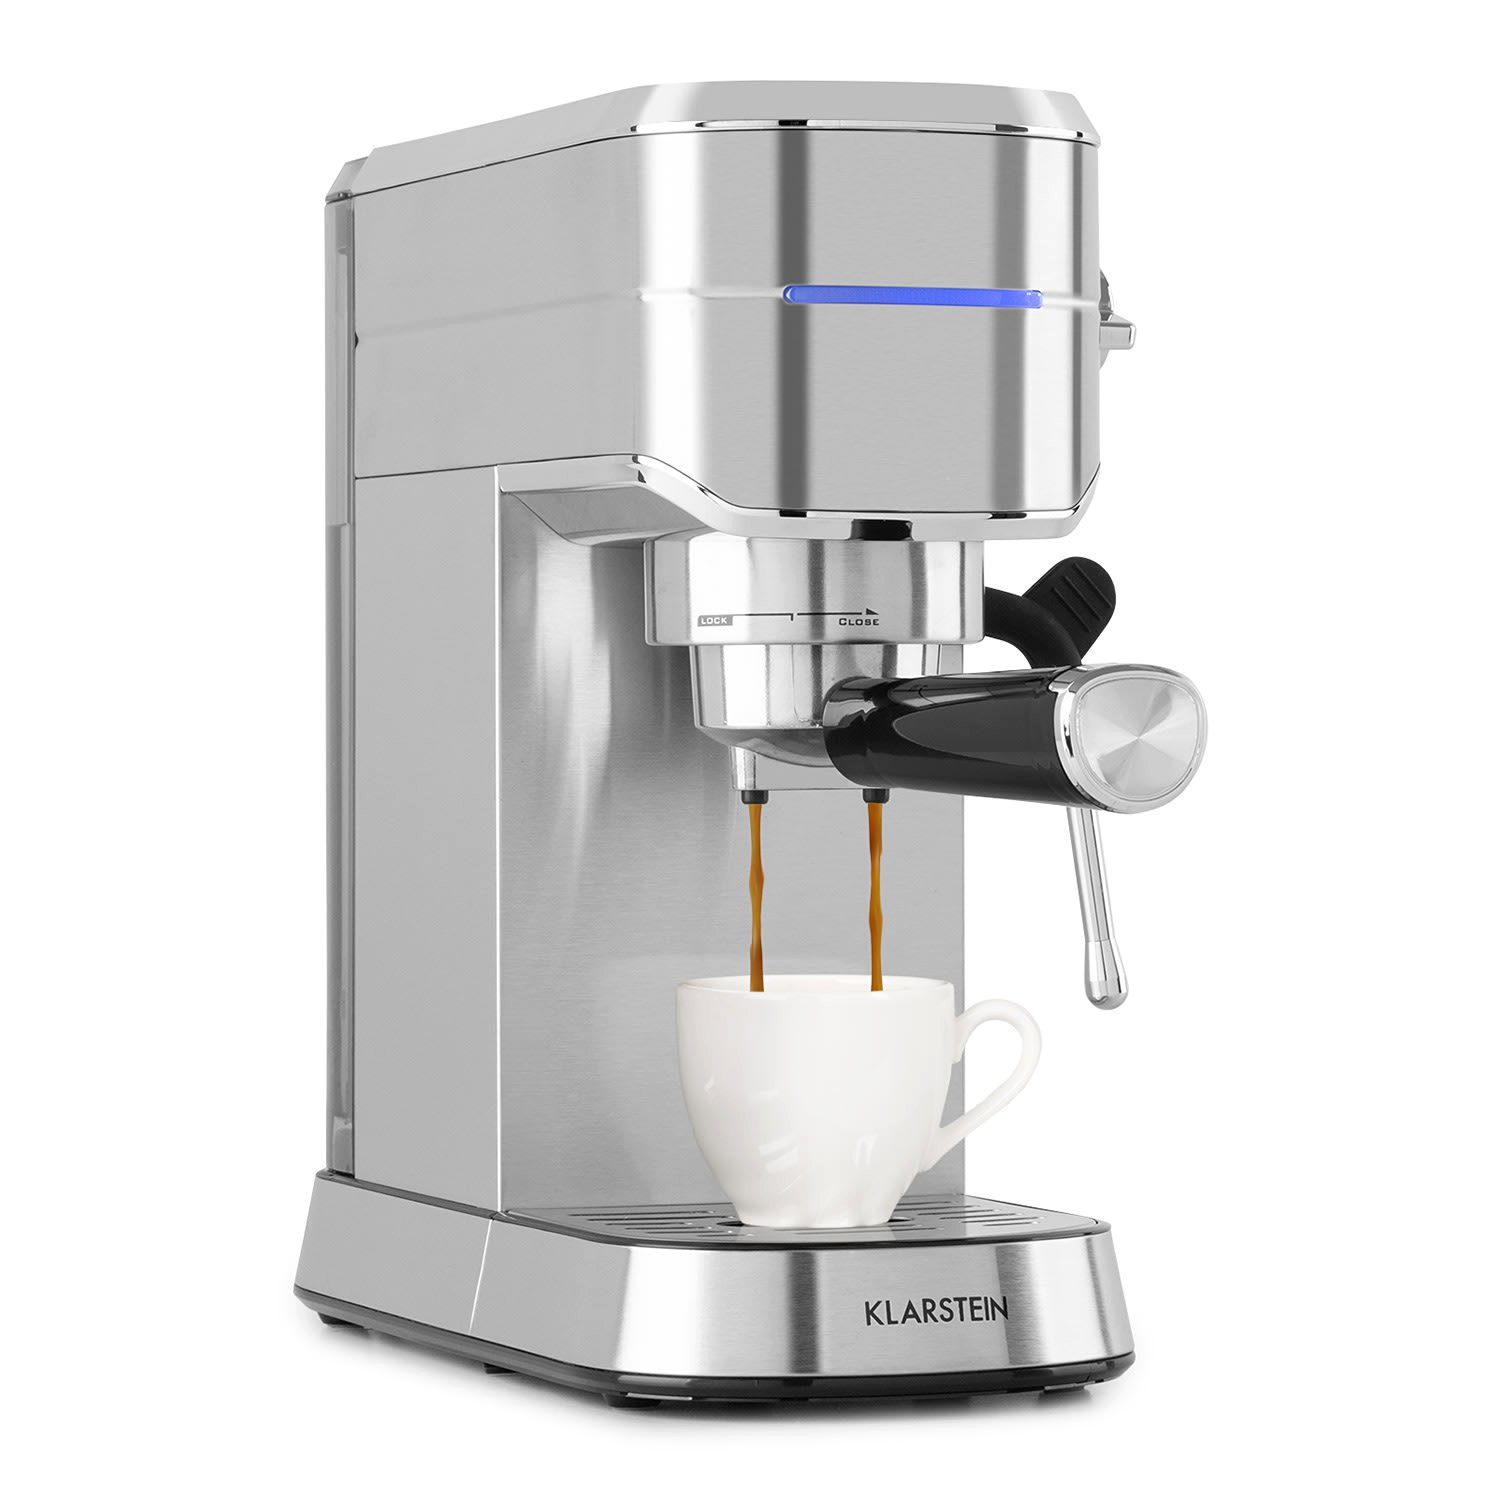 Espressomaker, Tasse: für Menge Futura jede richtige Filterkaffeemaschine Stoppfunktion Für Klarstein die